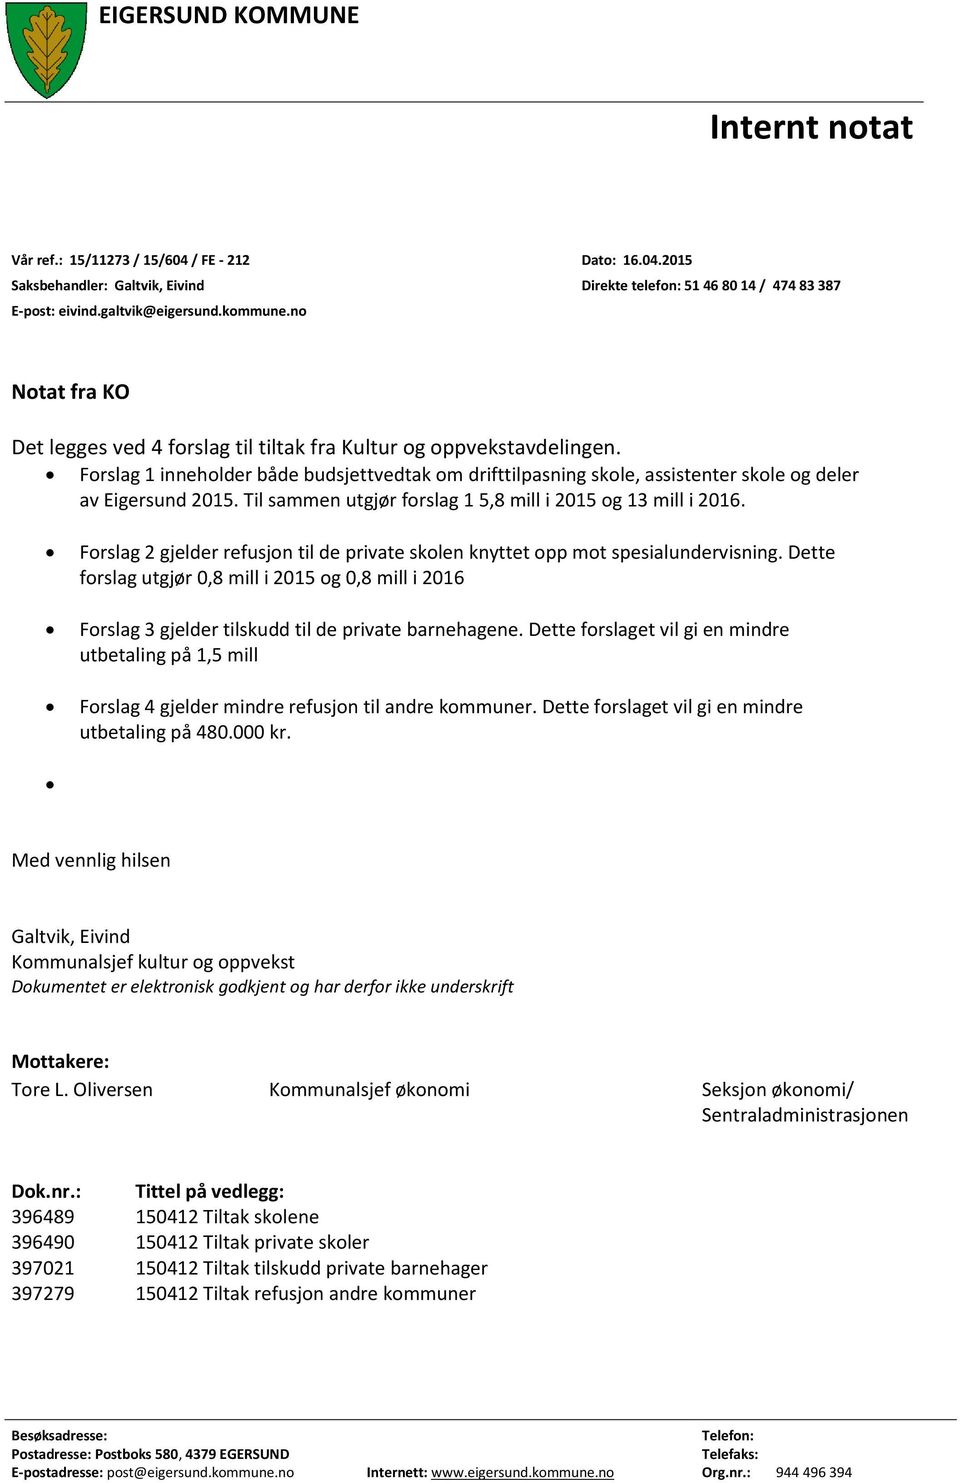 Forslag 1 inneholder både budsjettvedtak om drifttilpasning skole, assistenter skole og deler av Eigersund 2015. Til sammen utgjør forslag 1 5,8 mill i 2015 og 13 mill i 2016.